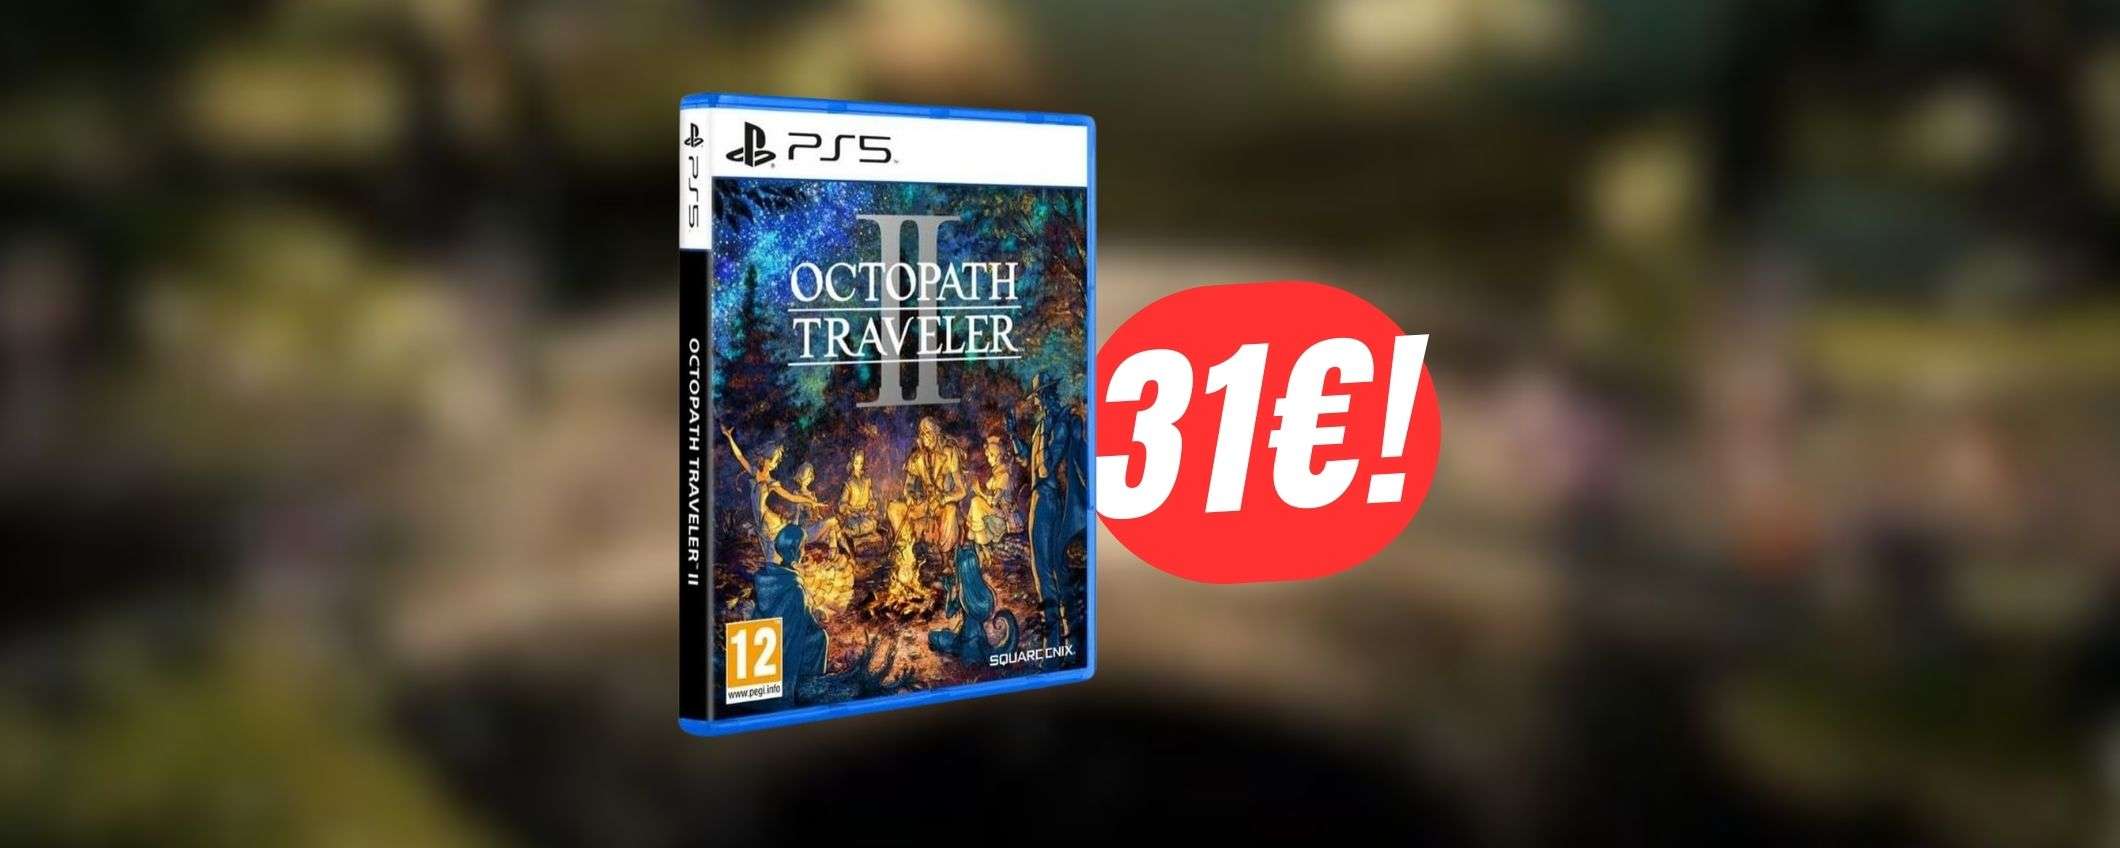 Octopath Traveler II è il JRPG dei sogni (e costa 31€ grazie allo SCONTO)